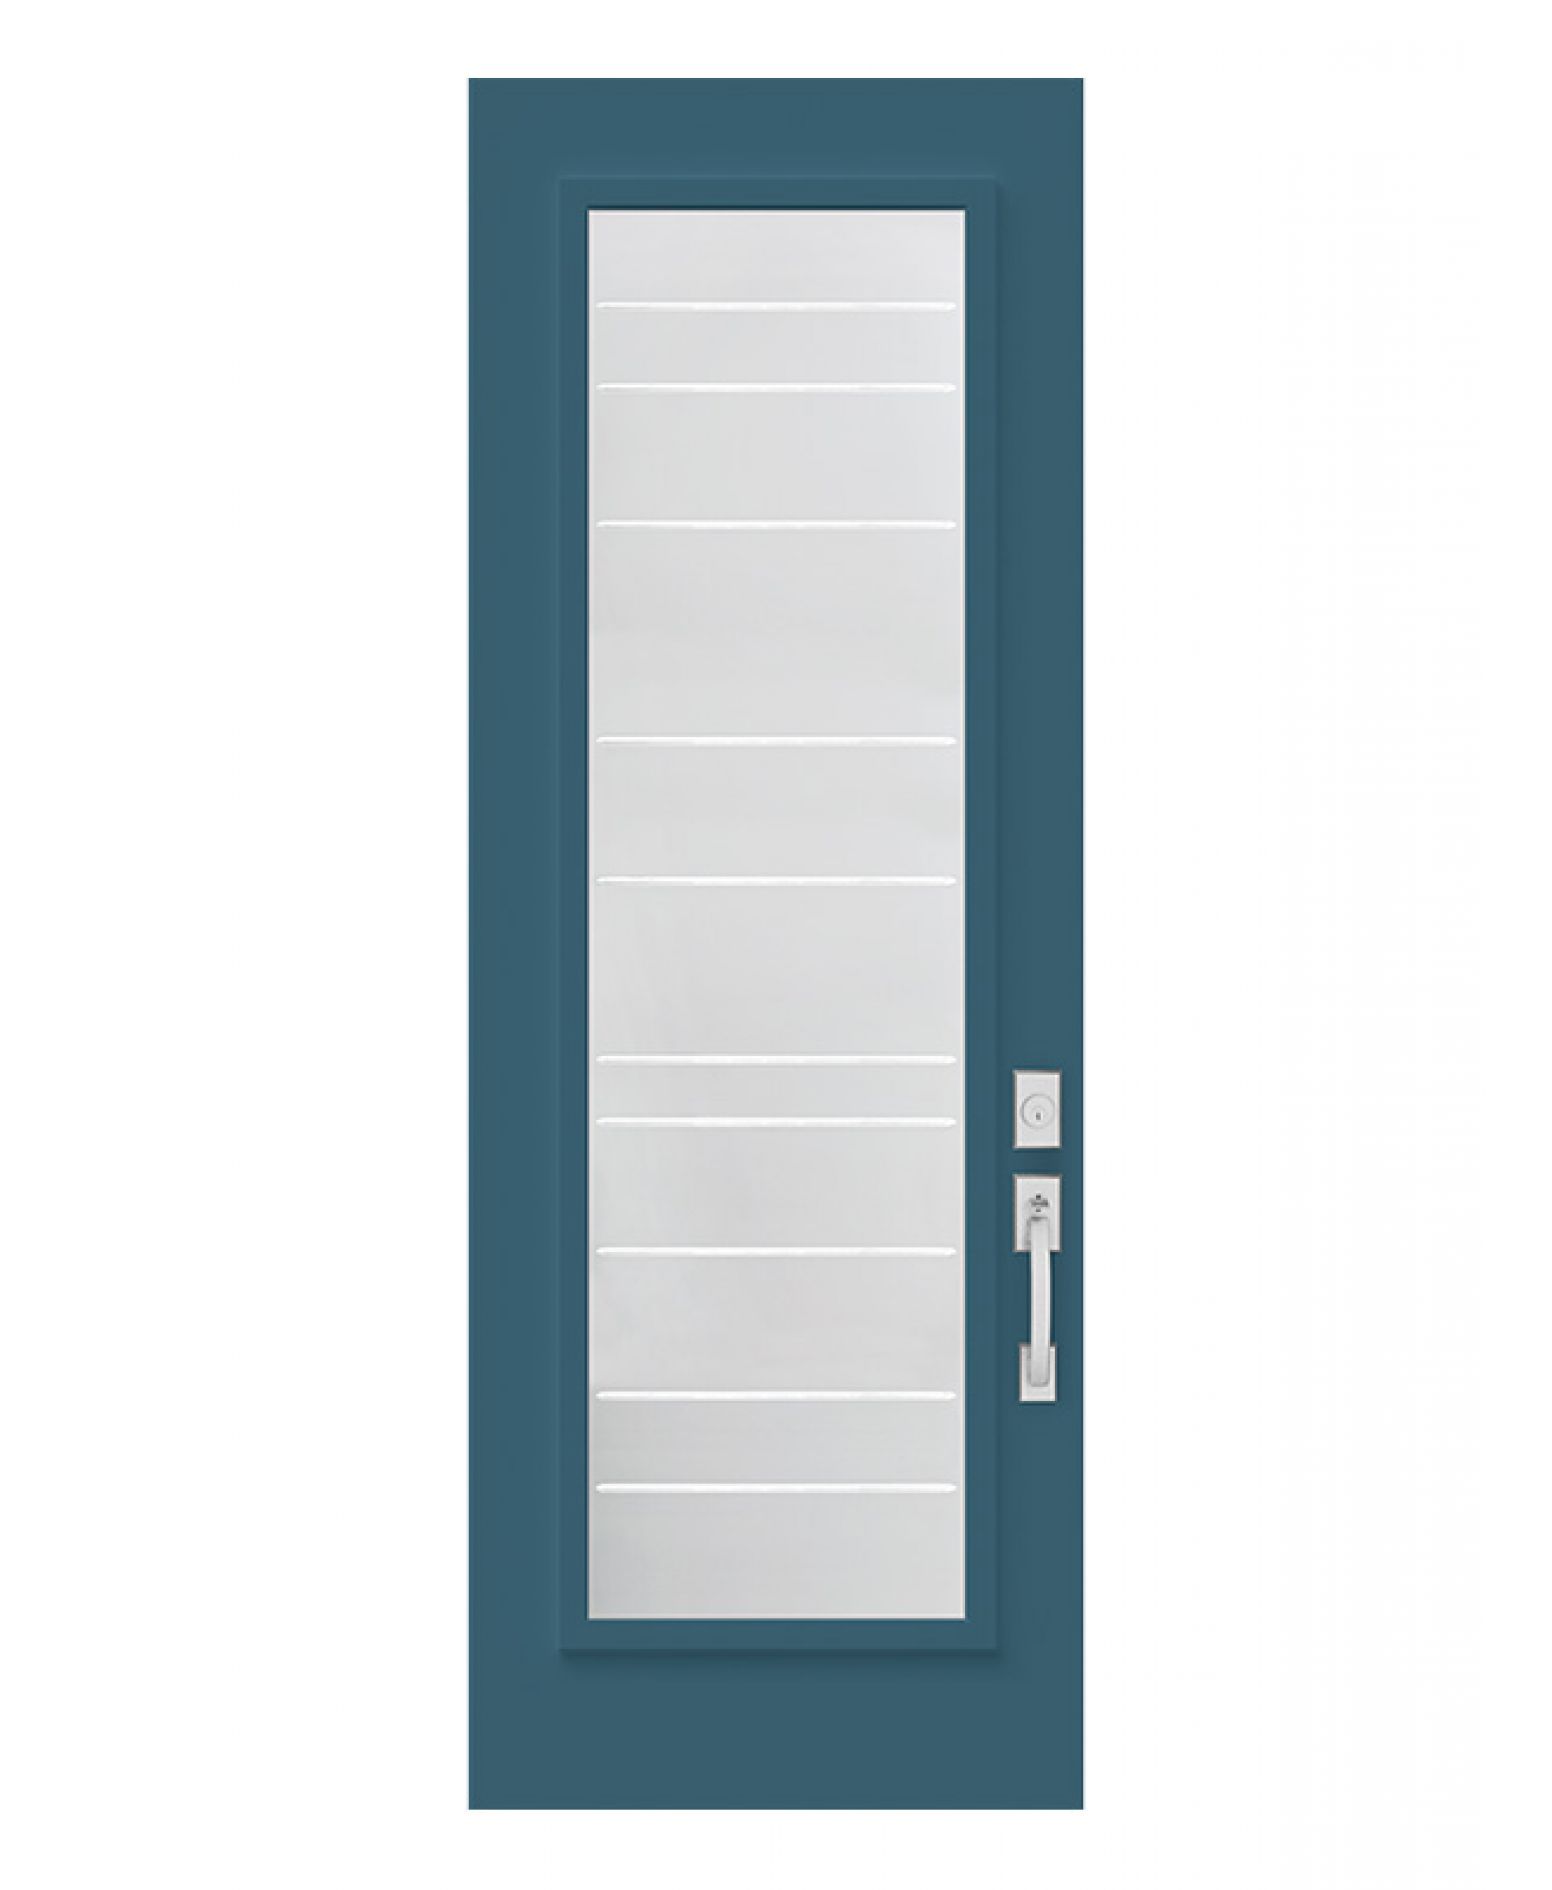 Doors for contractor - Zenith